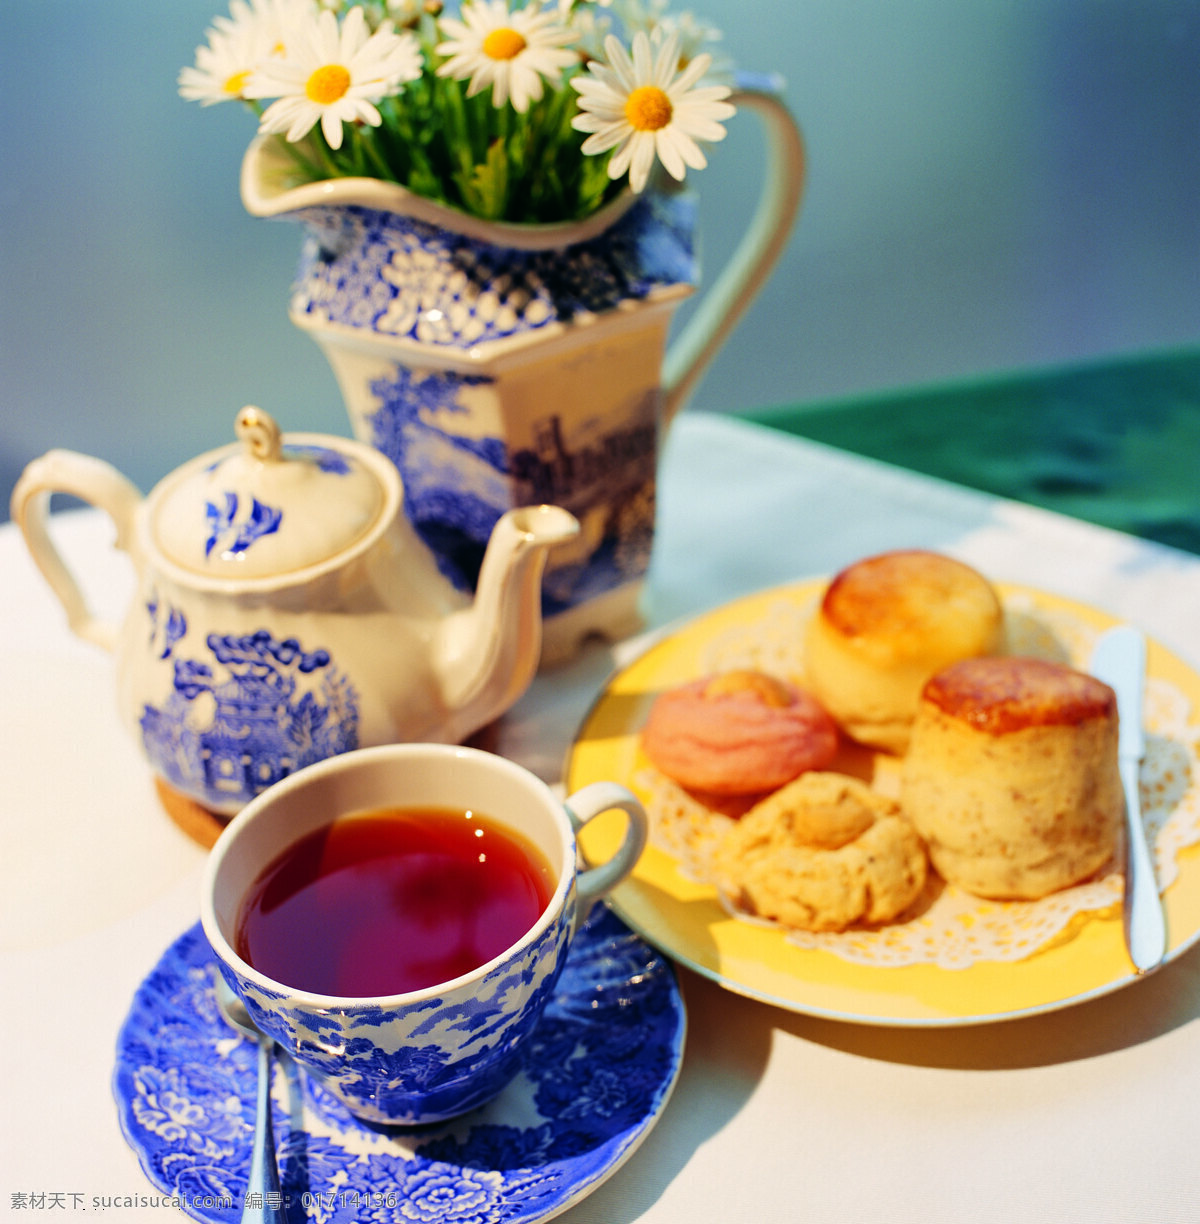 茶道免费下载 杯子 茶道 茶具 糕点 红茶 花 风景 生活 旅游餐饮